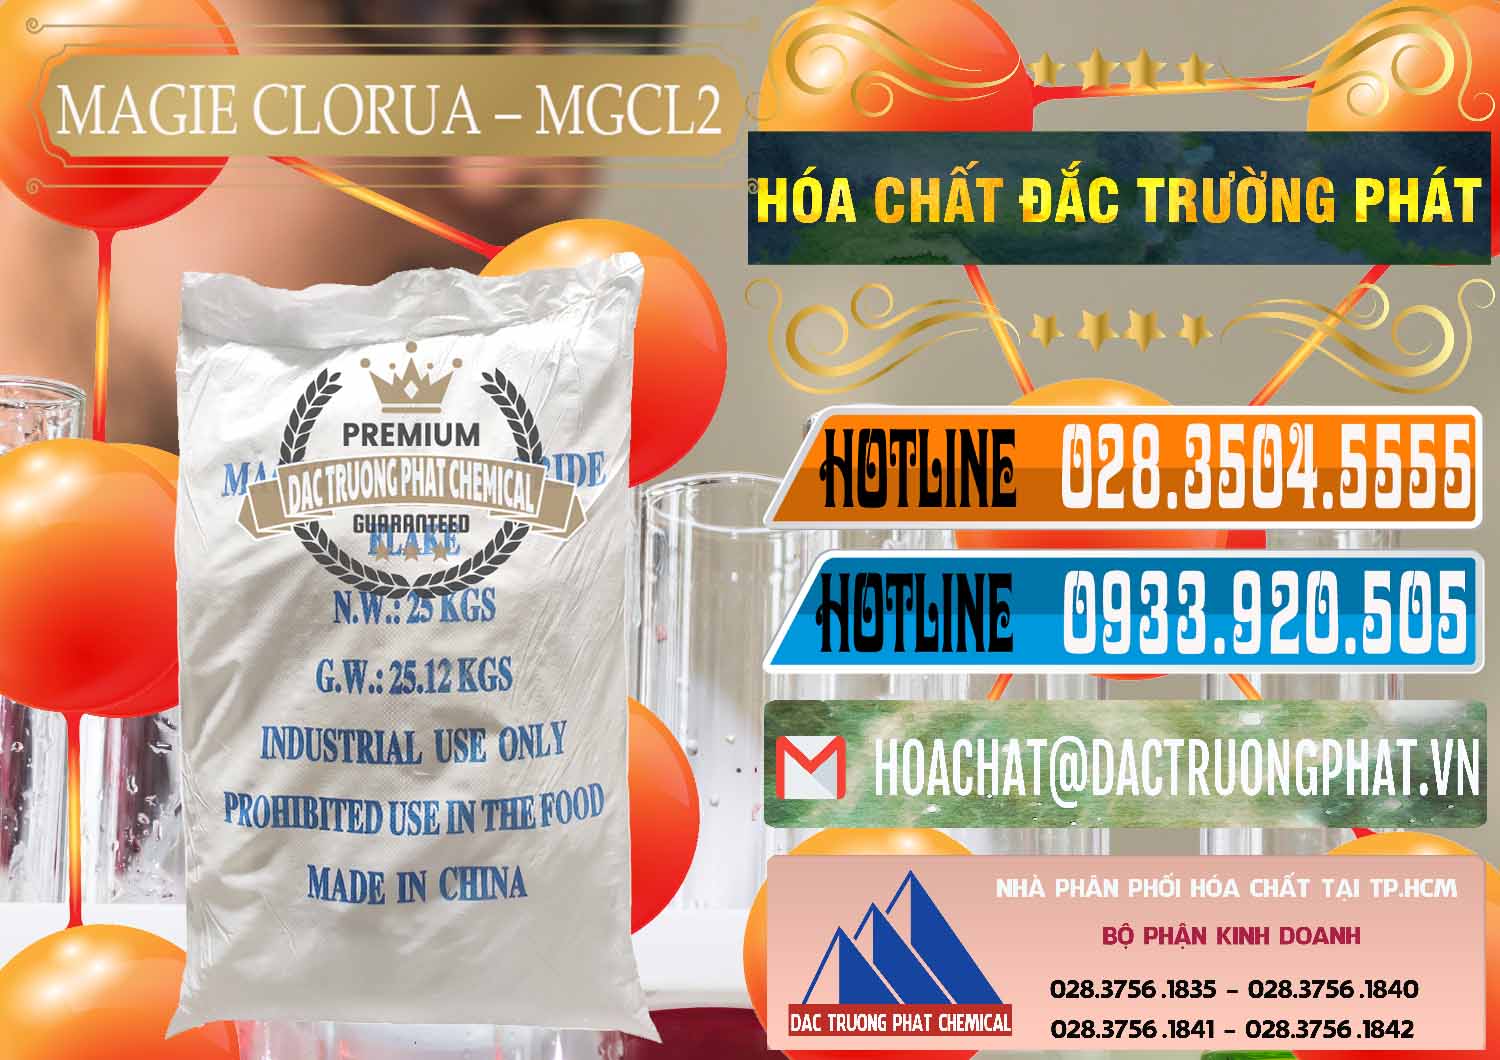 Cty chuyên bán & cung cấp Magie Clorua – MGCL2 96% Dạng Vảy Trung Quốc China - 0091 - Cty cung cấp - phân phối hóa chất tại TP.HCM - stmp.net